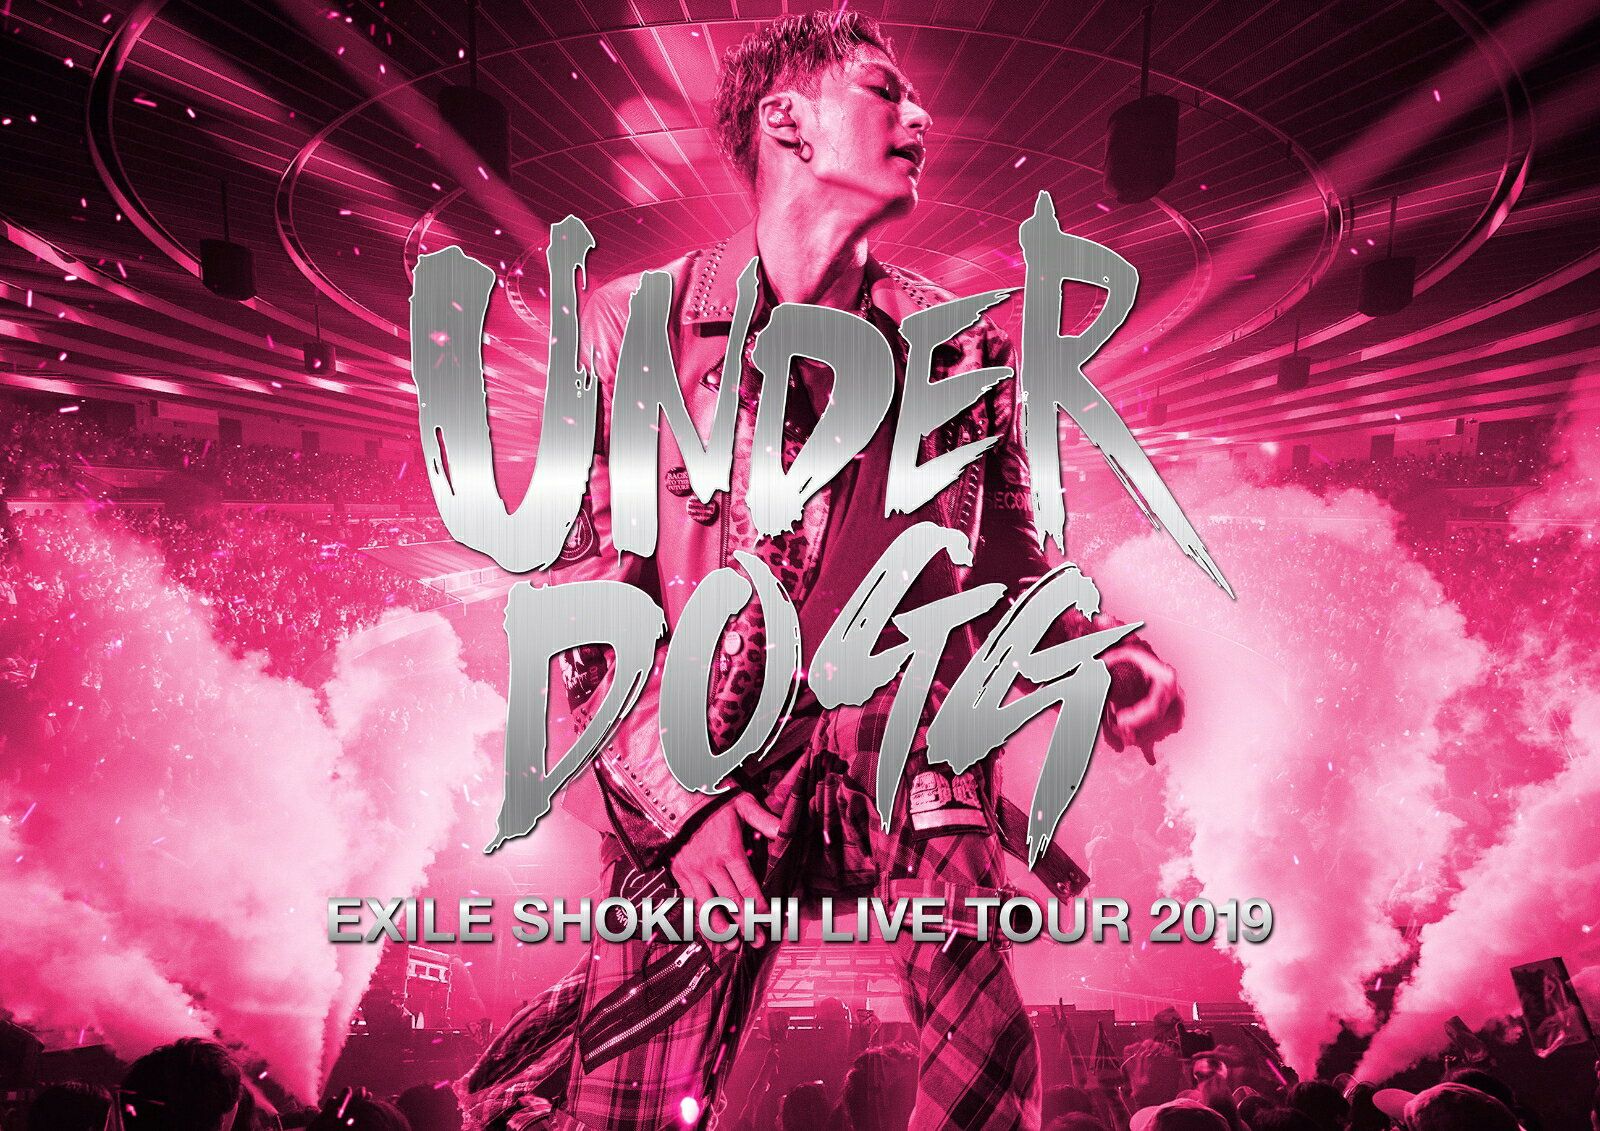 EXILE SHOKICHI LIVE TOUR 2019 UNDERDOGG【Blu-ray】